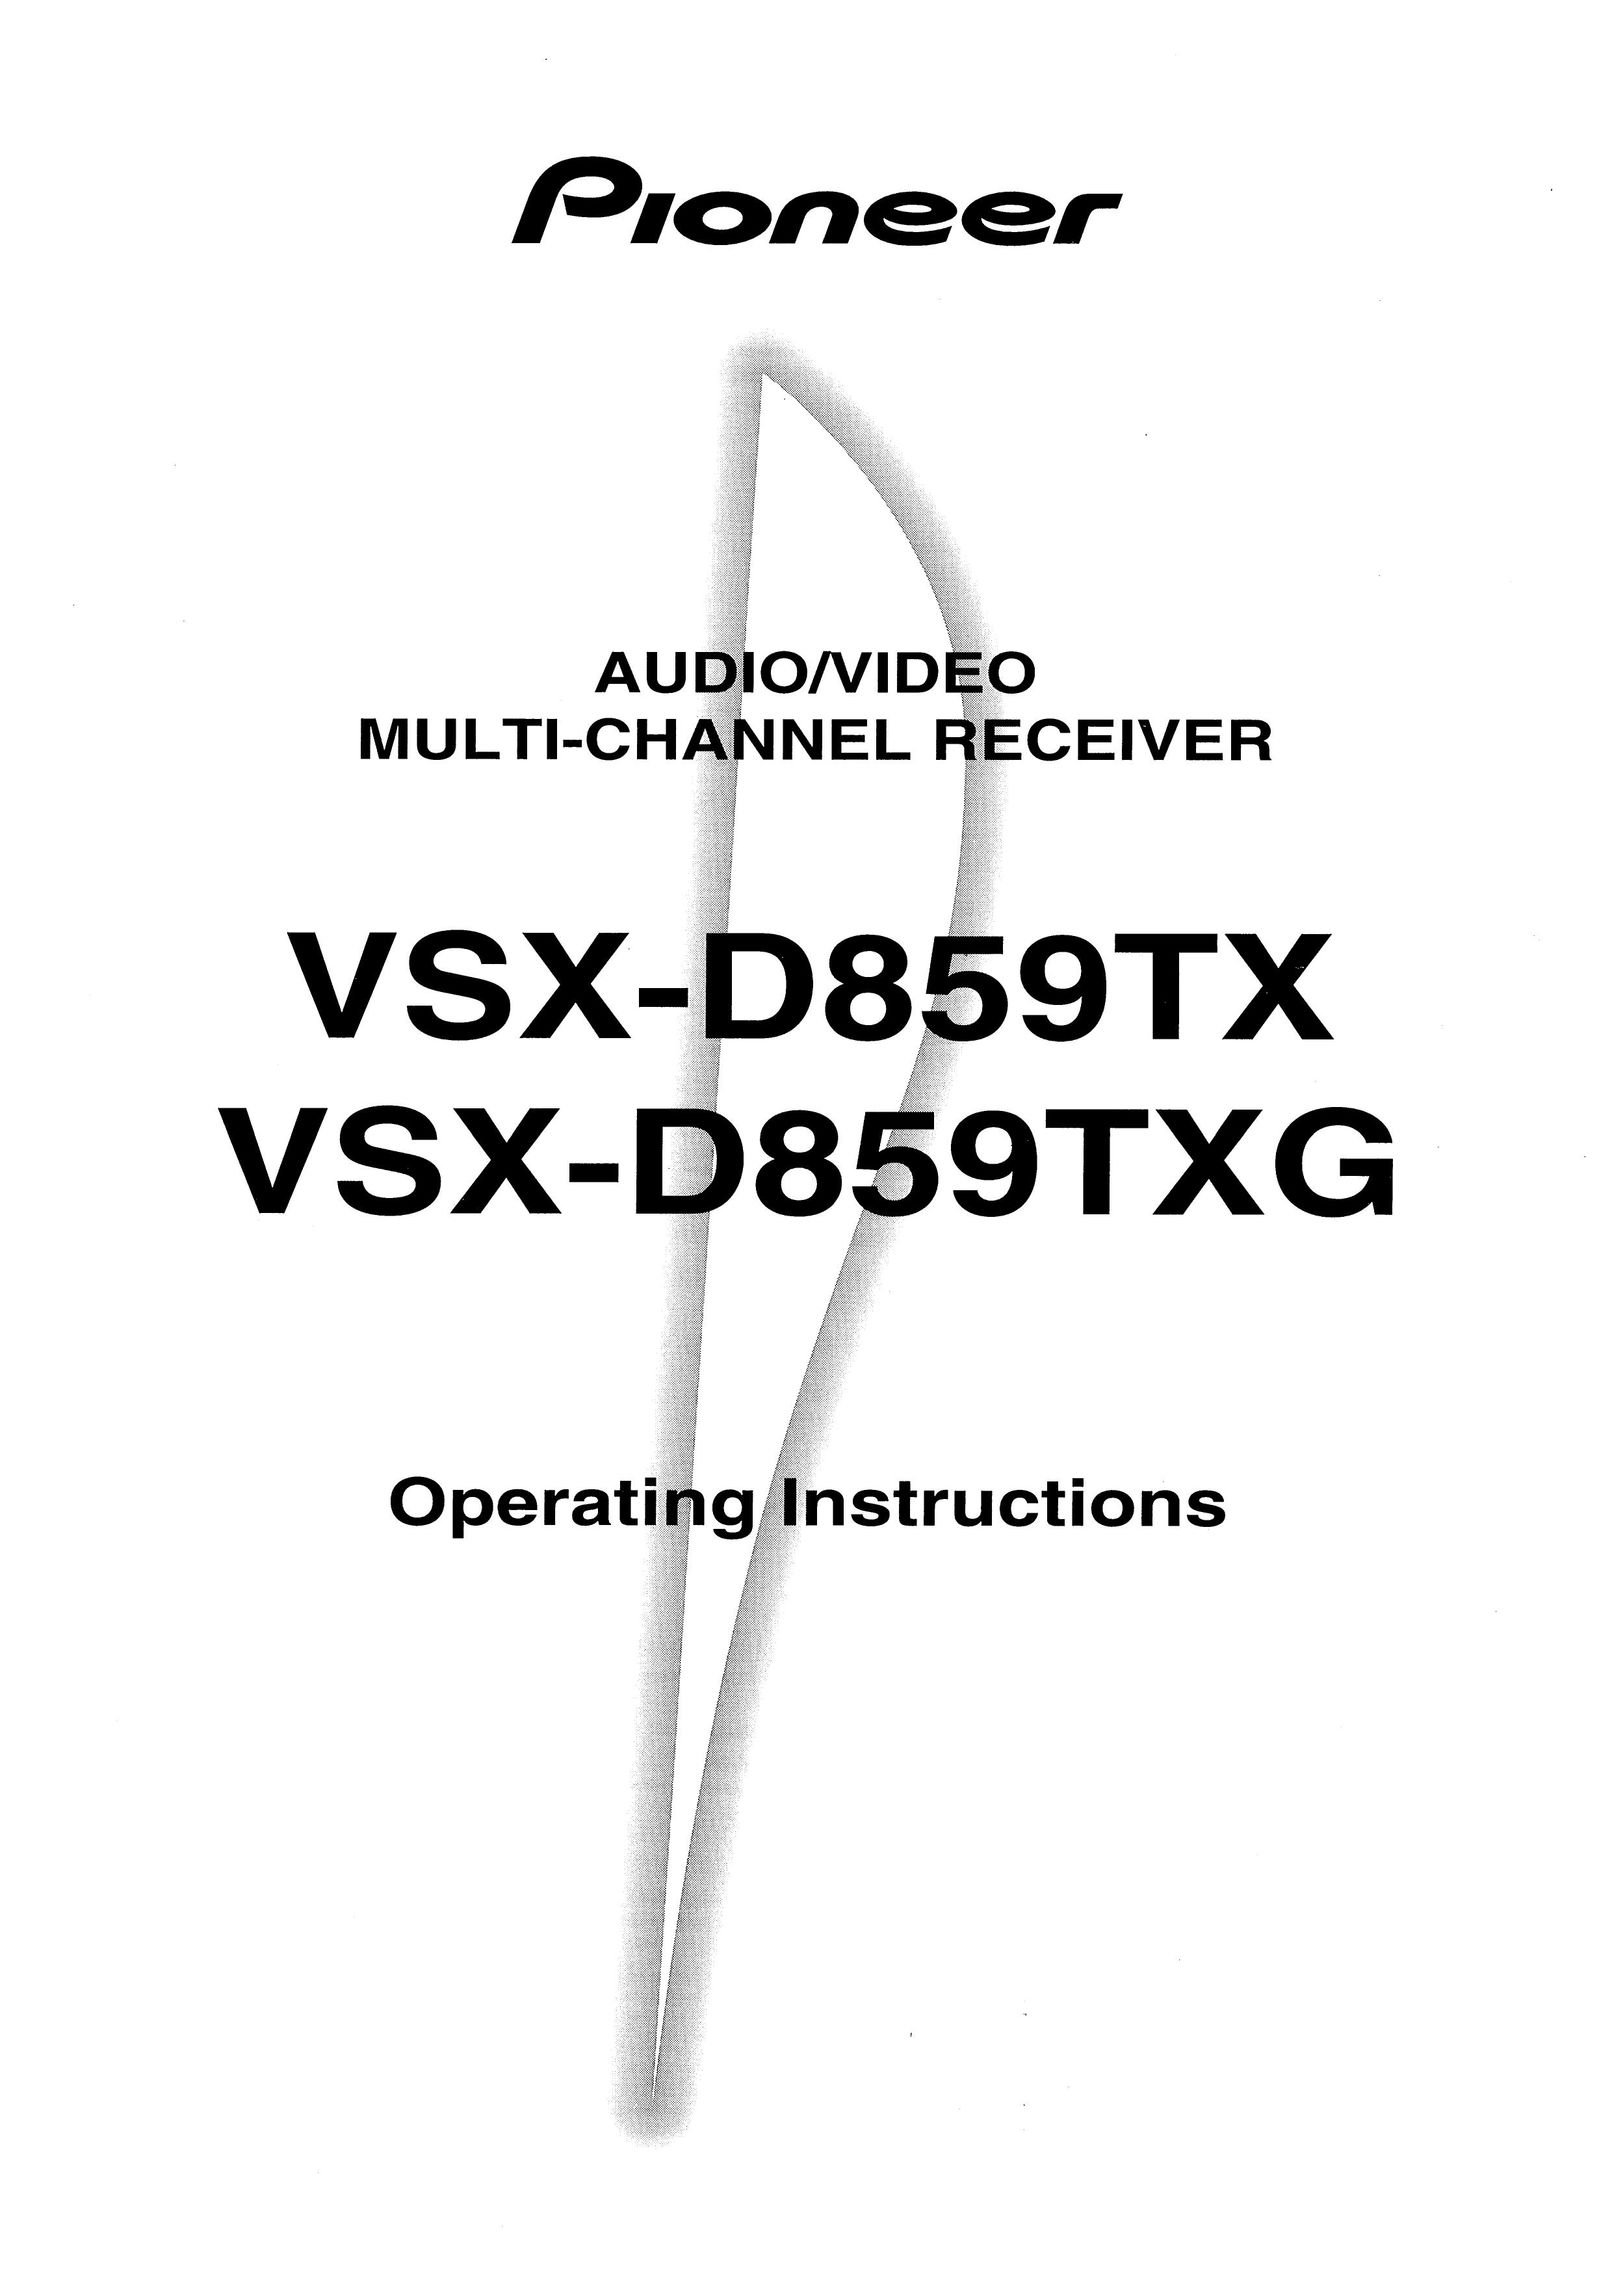 Pioneer VSX-D859TXG Car Satellite TV System User Manual